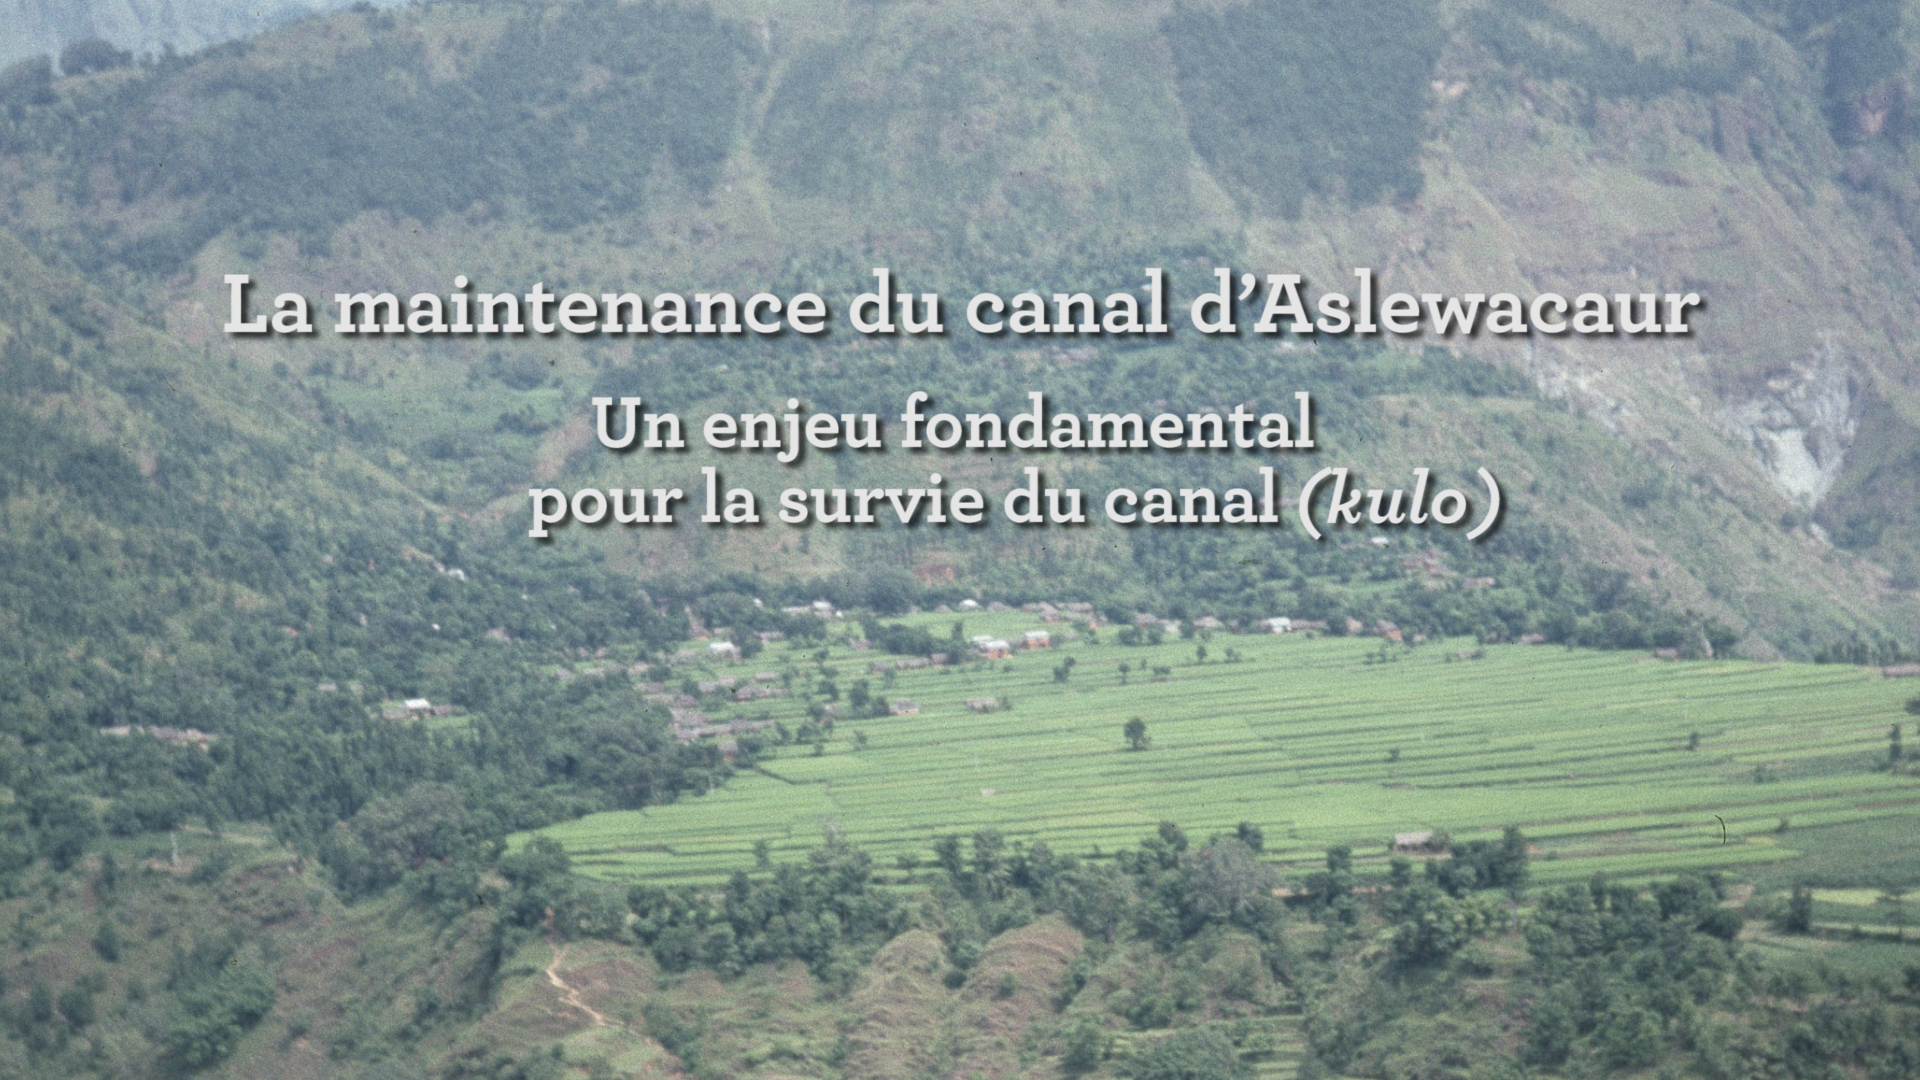 La maintenance du canal d’Aslewacaur
Un enjeu fondamental pour la survie du canal